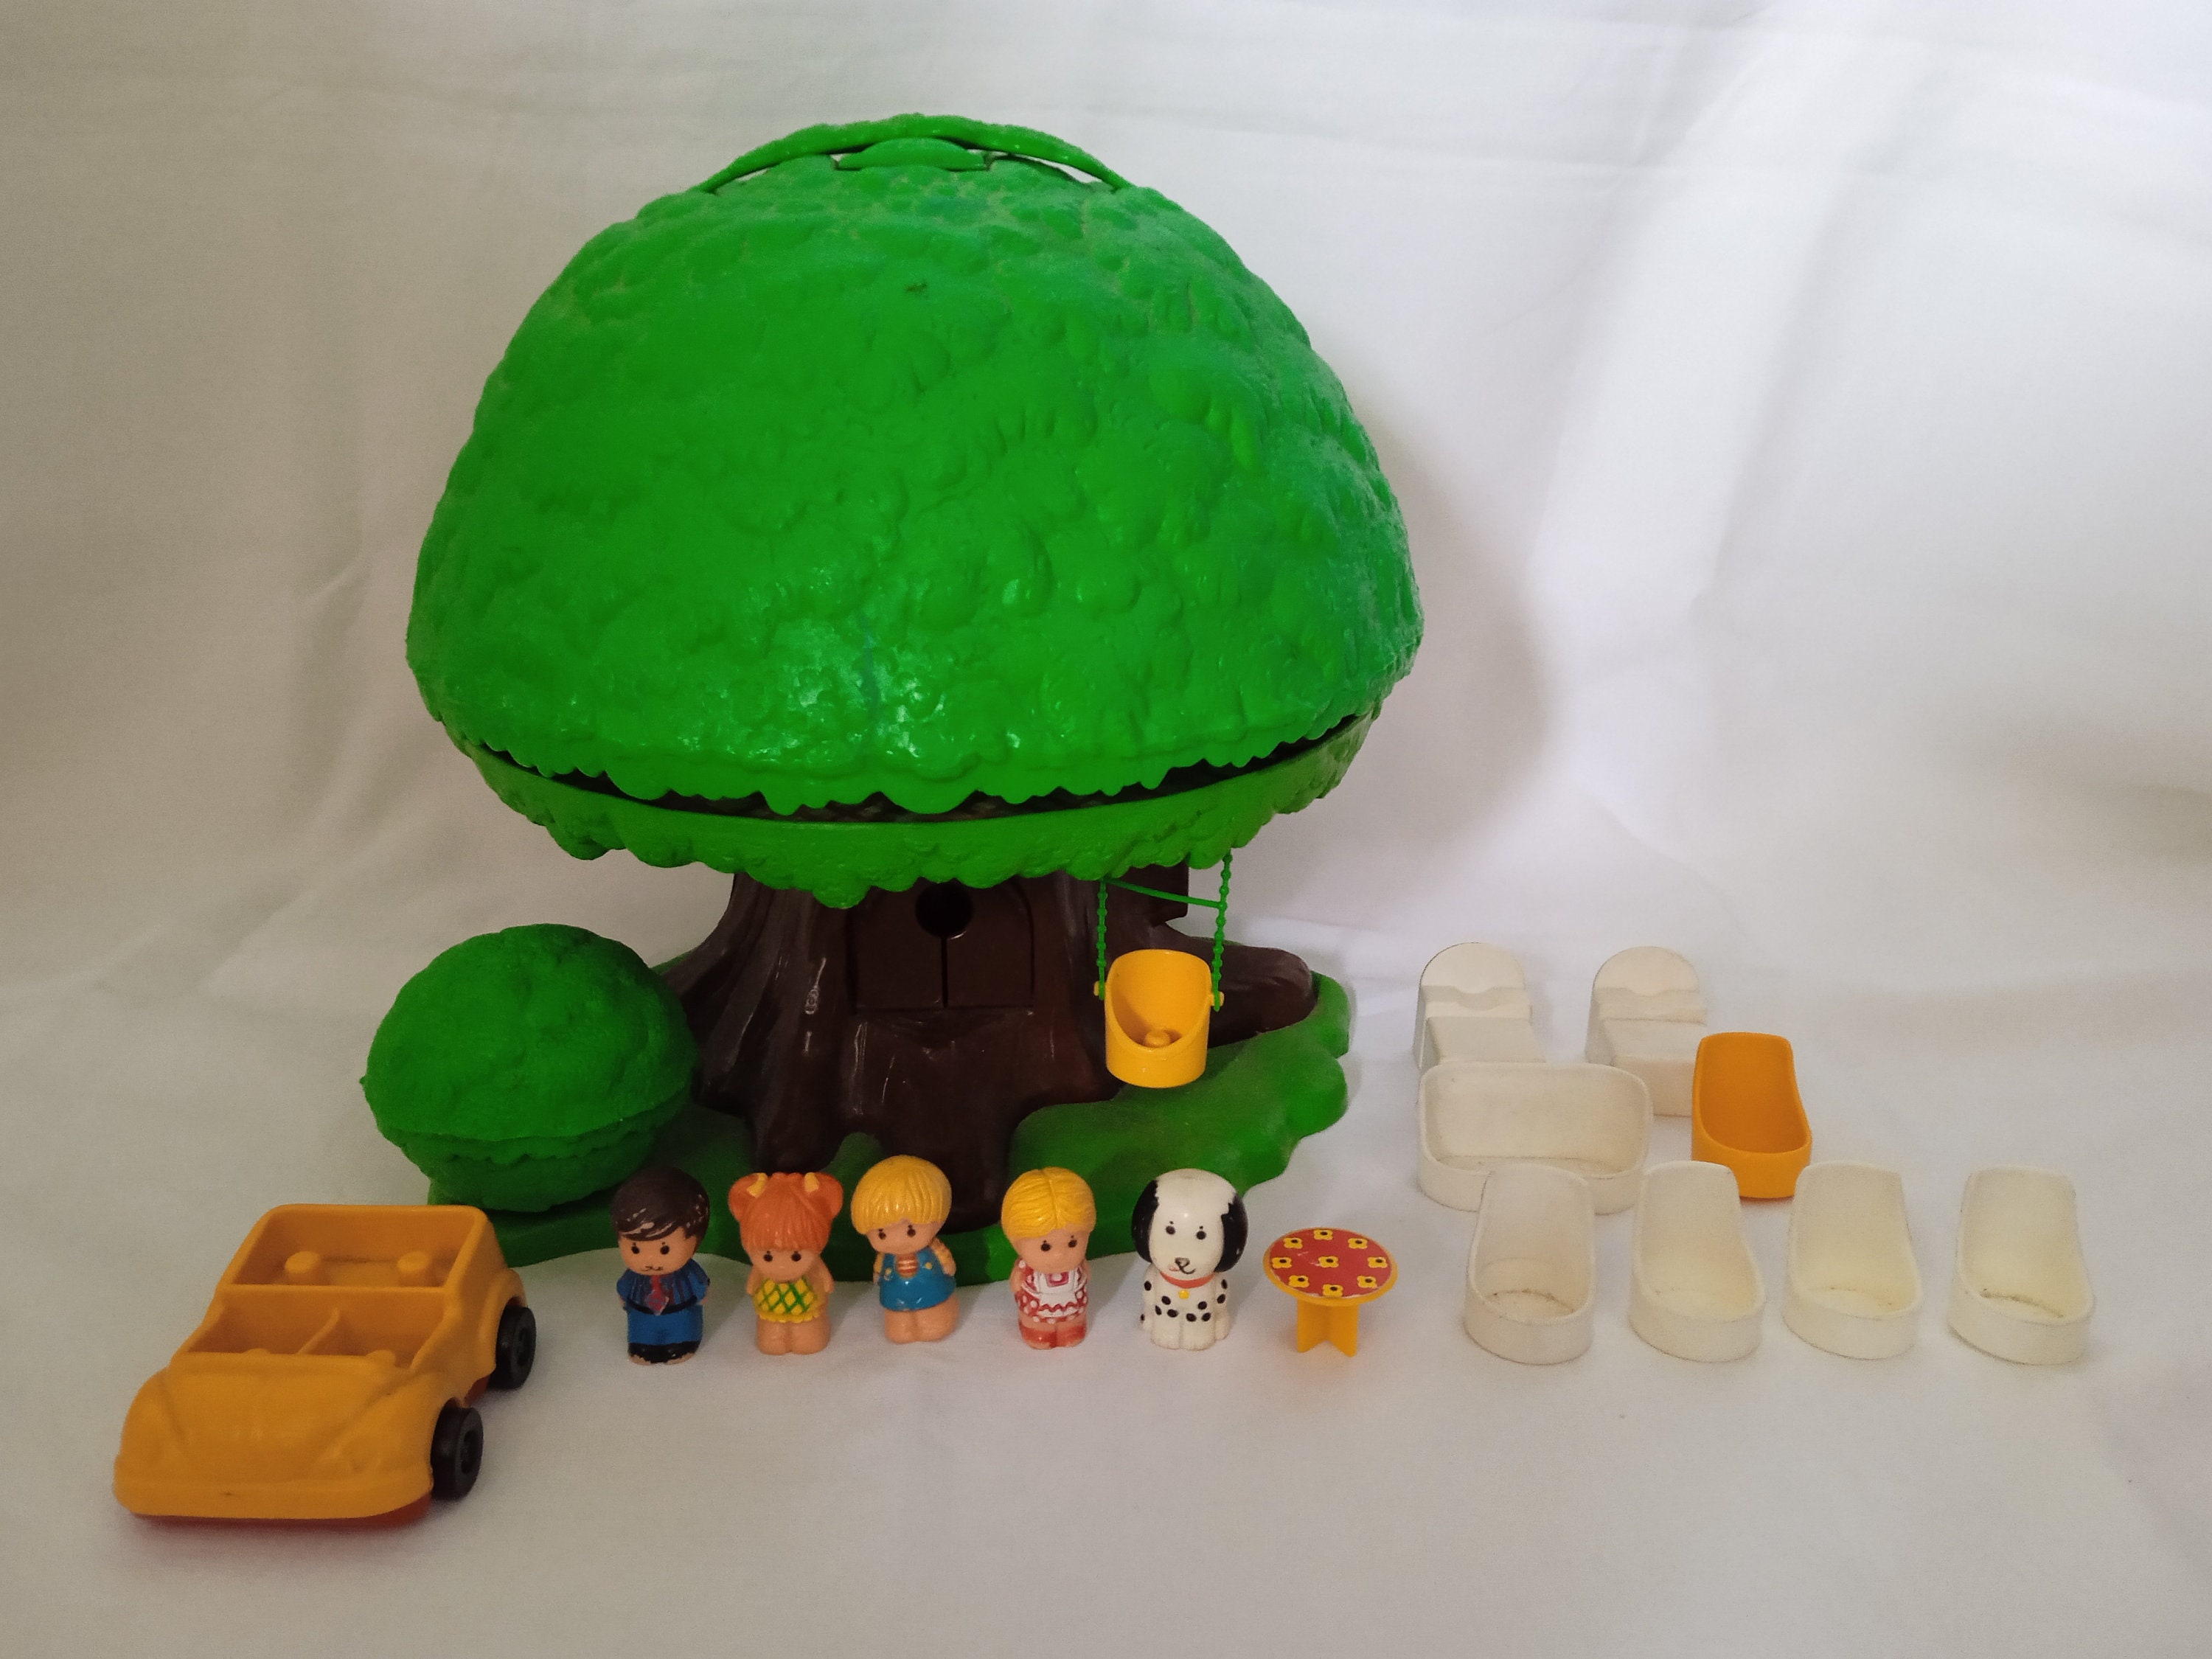 La famille Klorofil de Vulli blister de 5 personnages - jouets